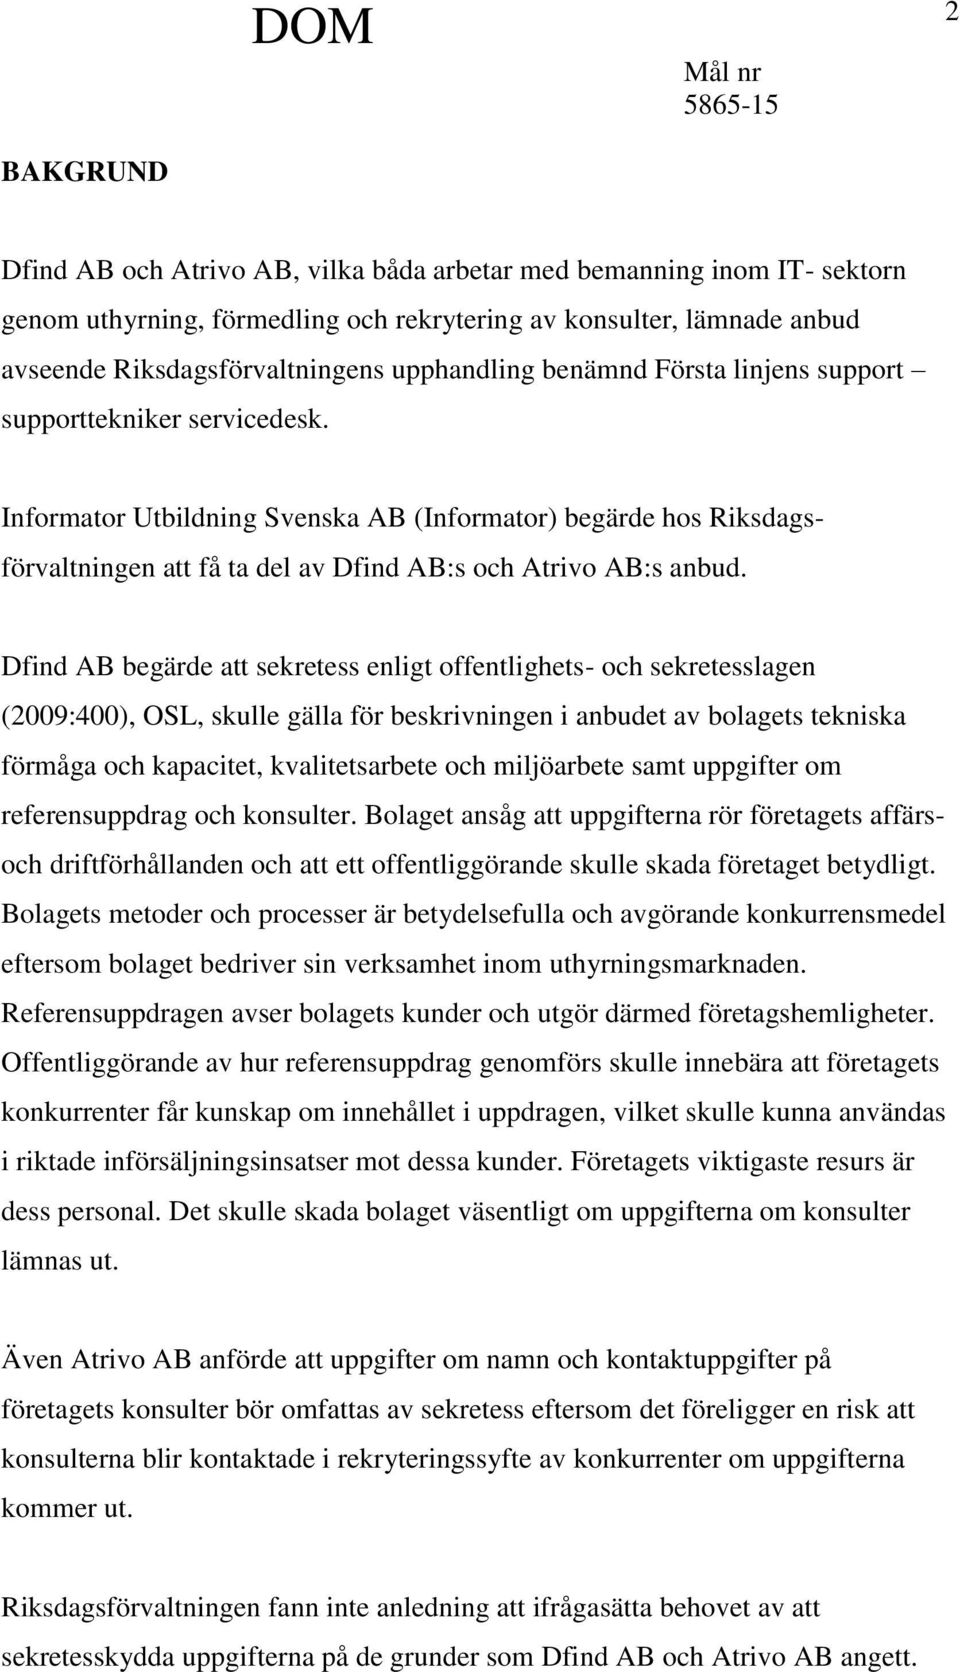 Informator Utbildning Svenska AB (Informator) begärde hos Riksdagsförvaltningen att få ta del av Dfind AB:s och Atrivo AB:s anbud.